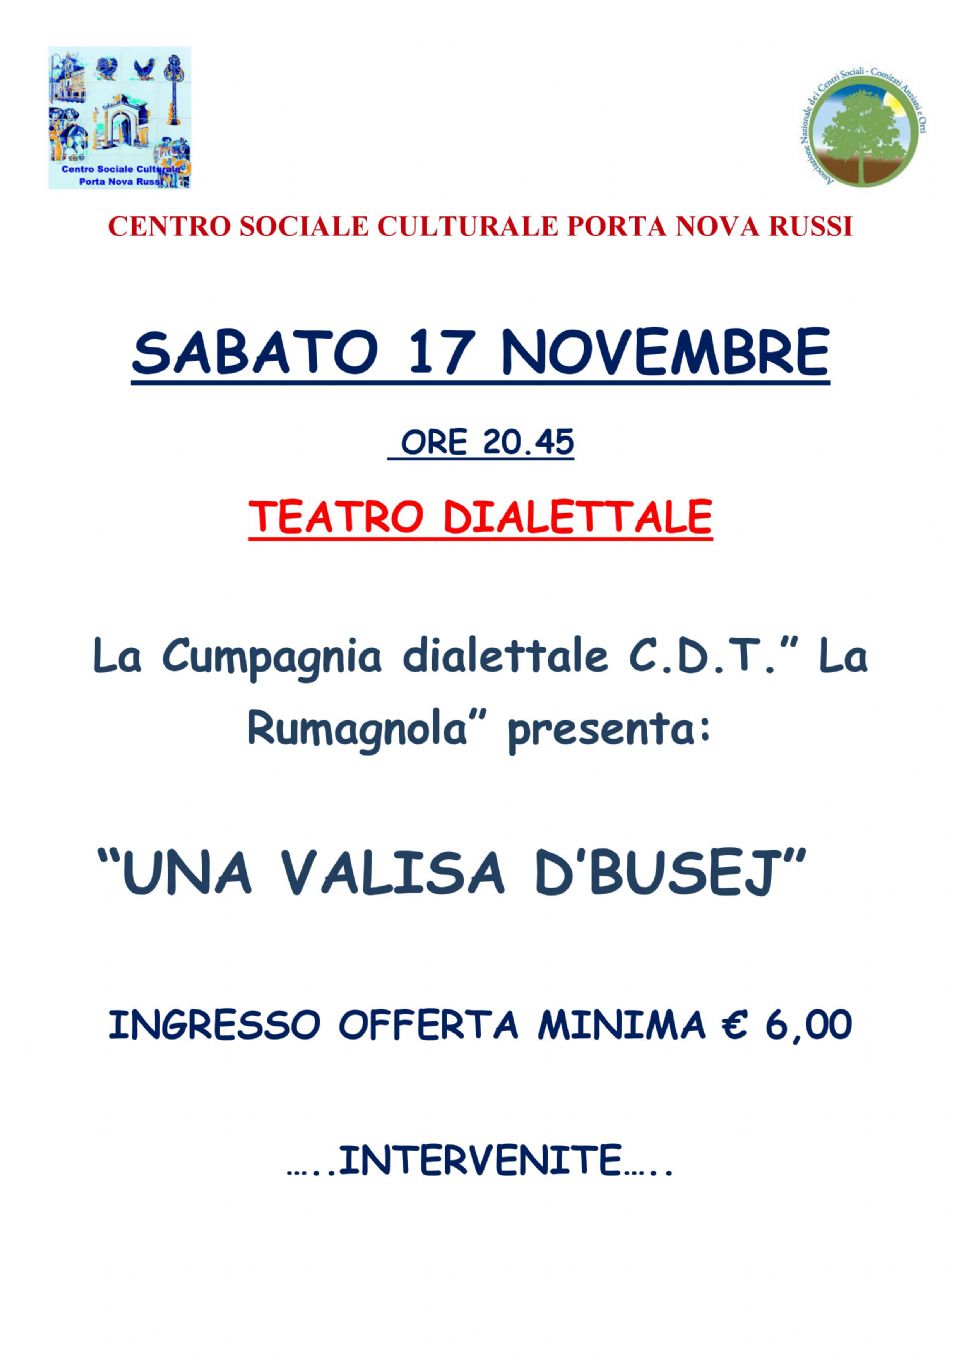 Teatro Dialettale 17 Novembre 2018